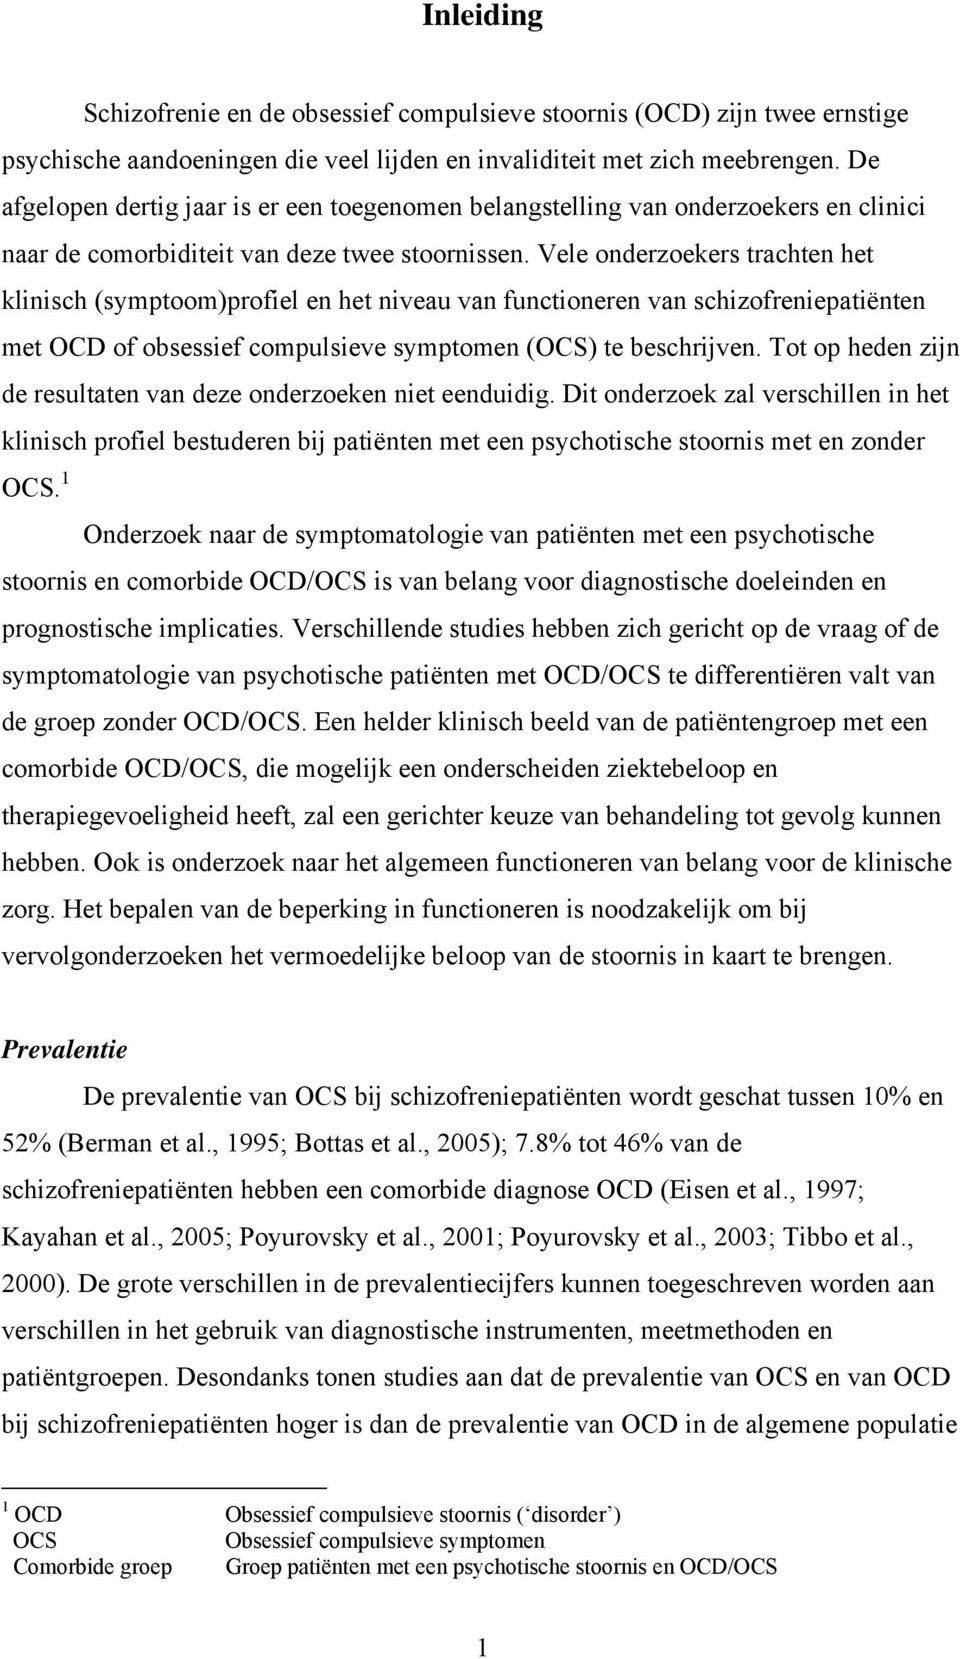 Vele onderzoekers trachten het klinisch (symptoom)profiel en het niveau van functioneren van schizofreniepatiënten met OCD of obsessief compulsieve symptomen (OCS) te beschrijven.